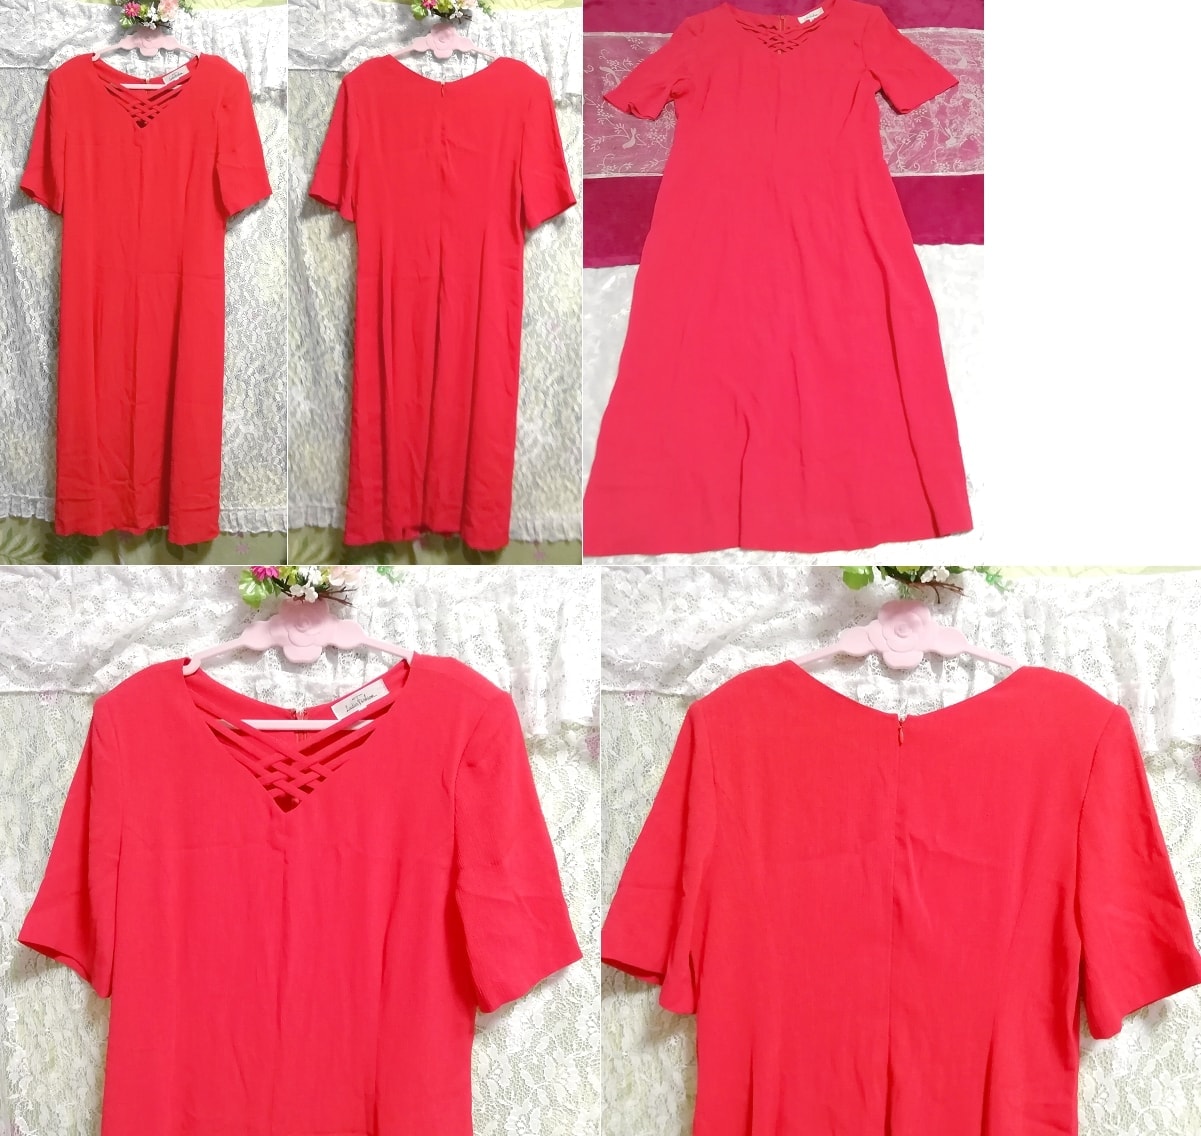 Vestido de falda túnica camisón negligee de manga corta rojo rojo, sayo, manga corta, talla m